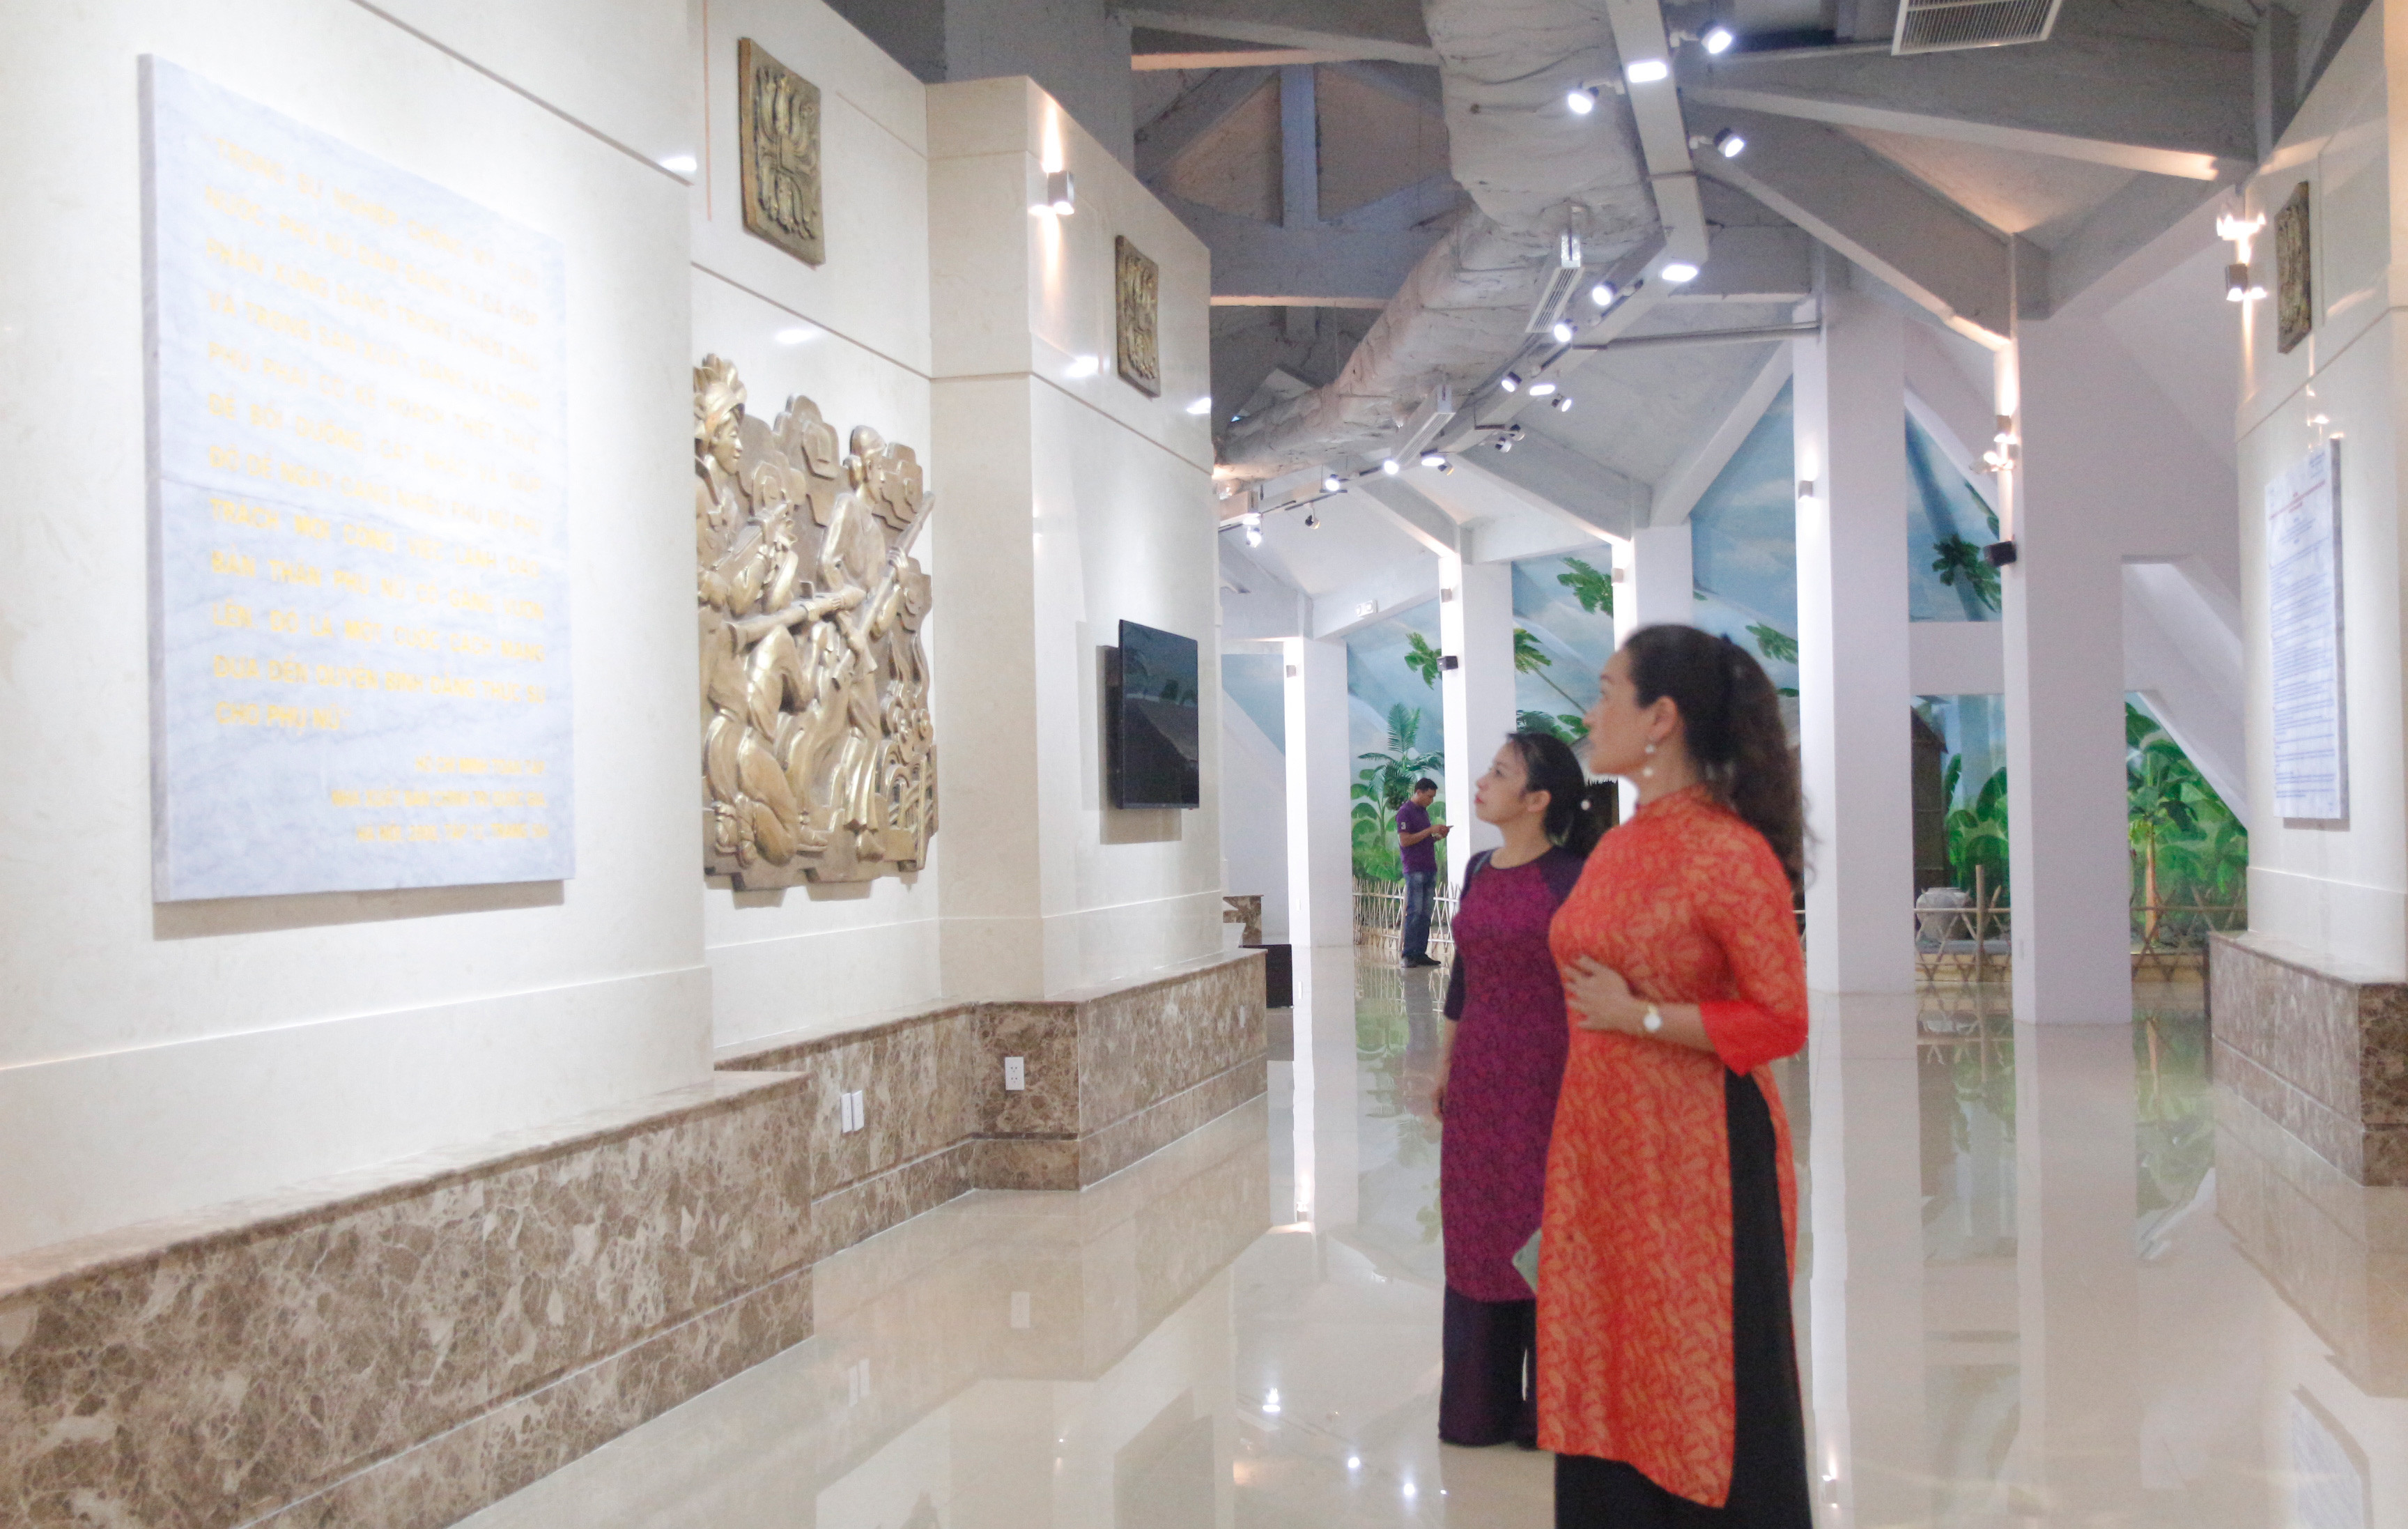 Đoàn cũng đã tham quan bảo tàng Mẹ Việt Nam Anh hùng nơi lưu giữ những hình ảnh, kỷ vật của các bà Mẹ Việt Nam Anh hùng trên khắp cả nước. Ảnh: Phương Anh.